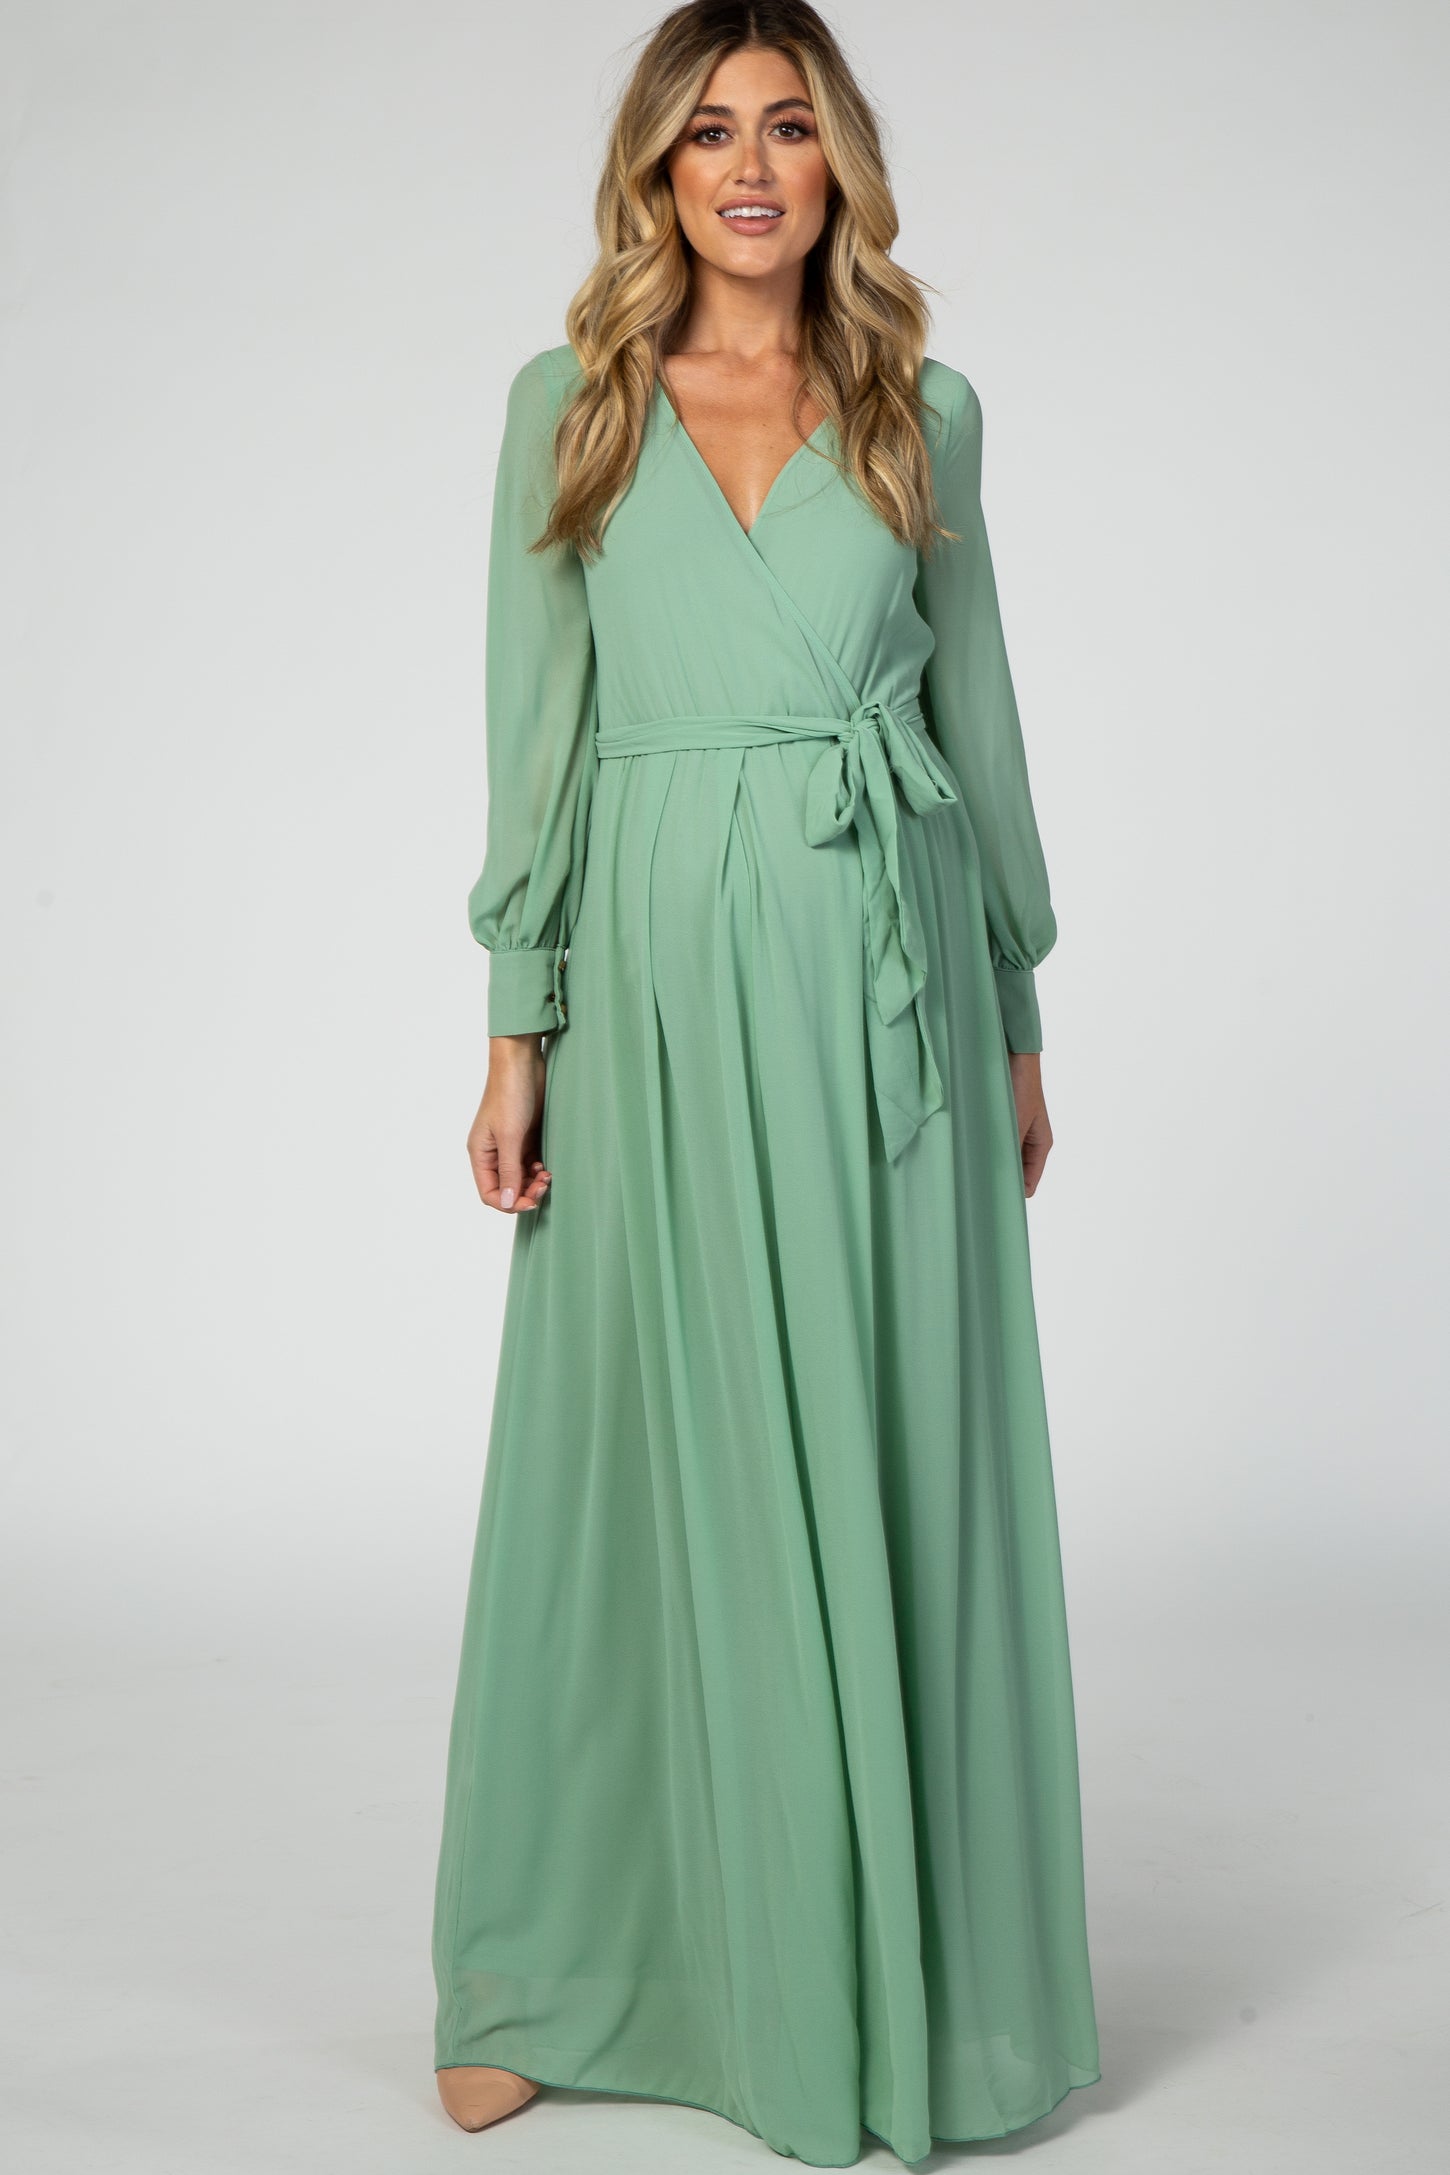 Mint Green Chiffon Maternity Maxi Dress– PinkBlush